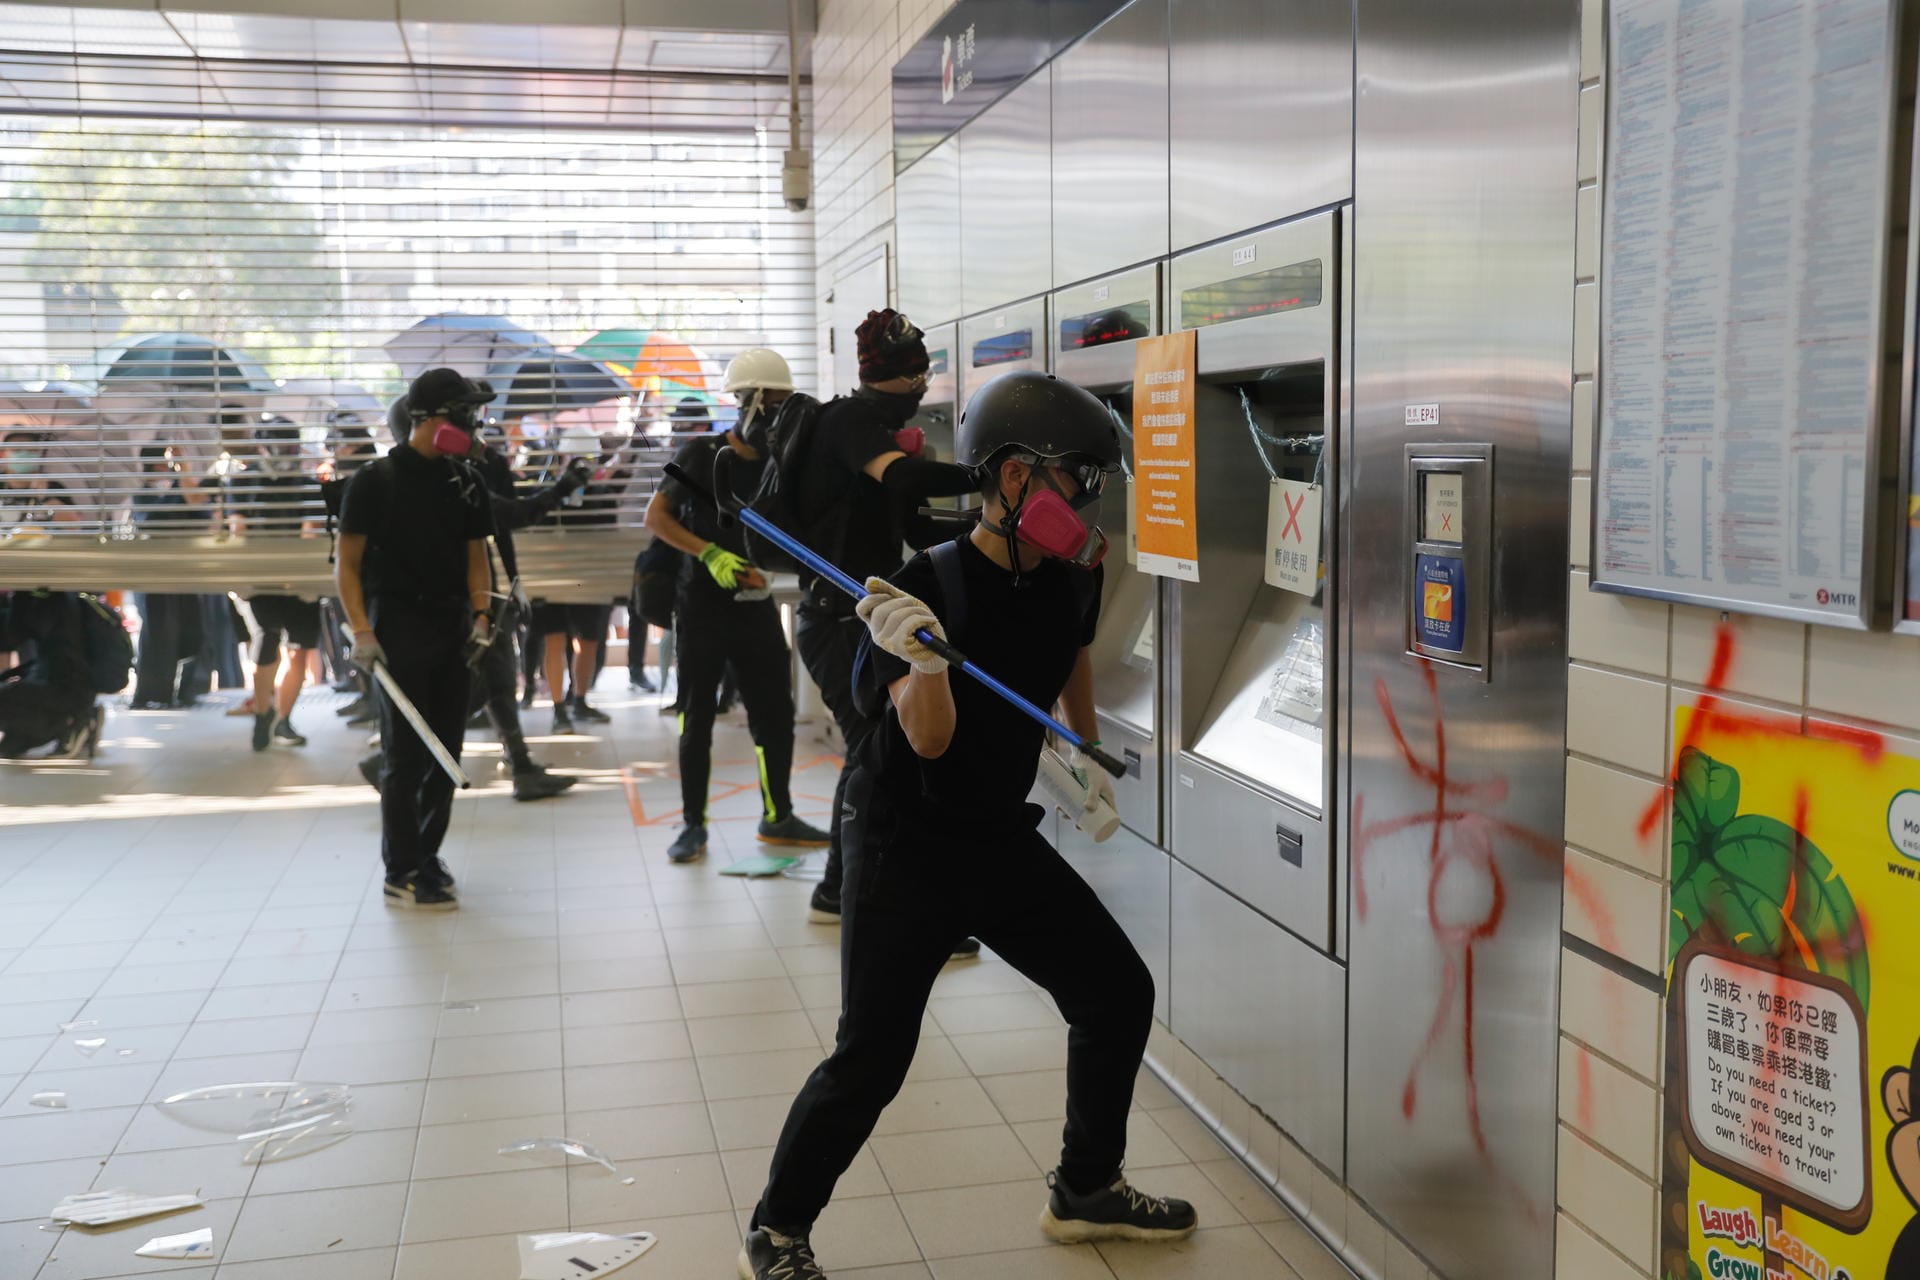 Erneut beteiligten sich auch Radikale an den Demonstrationen, wie hier in einer U-Bahn-Station.